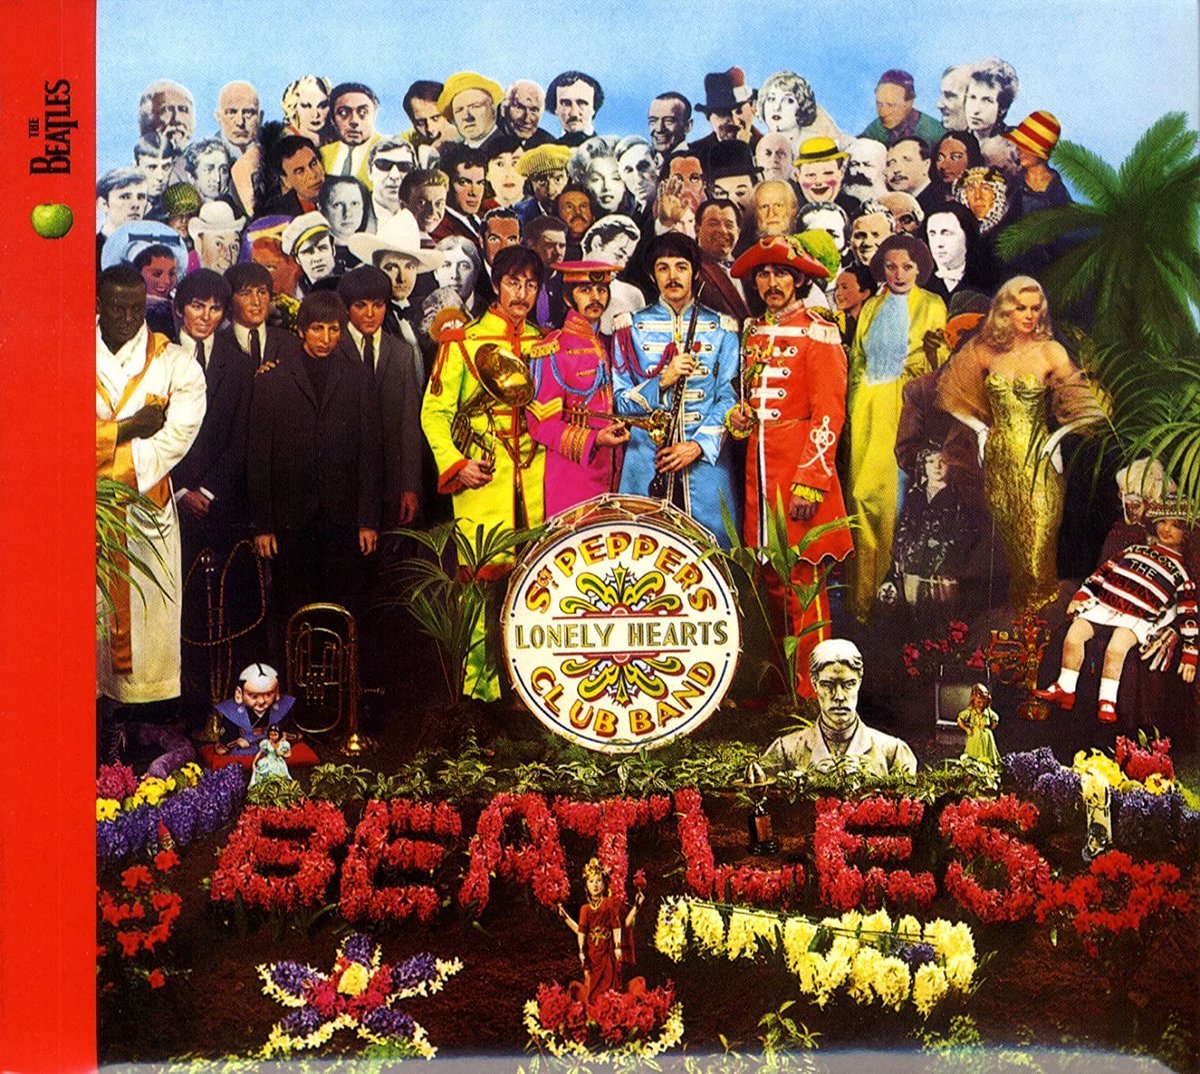 Day 4 - best Beatles album. Change my mind.